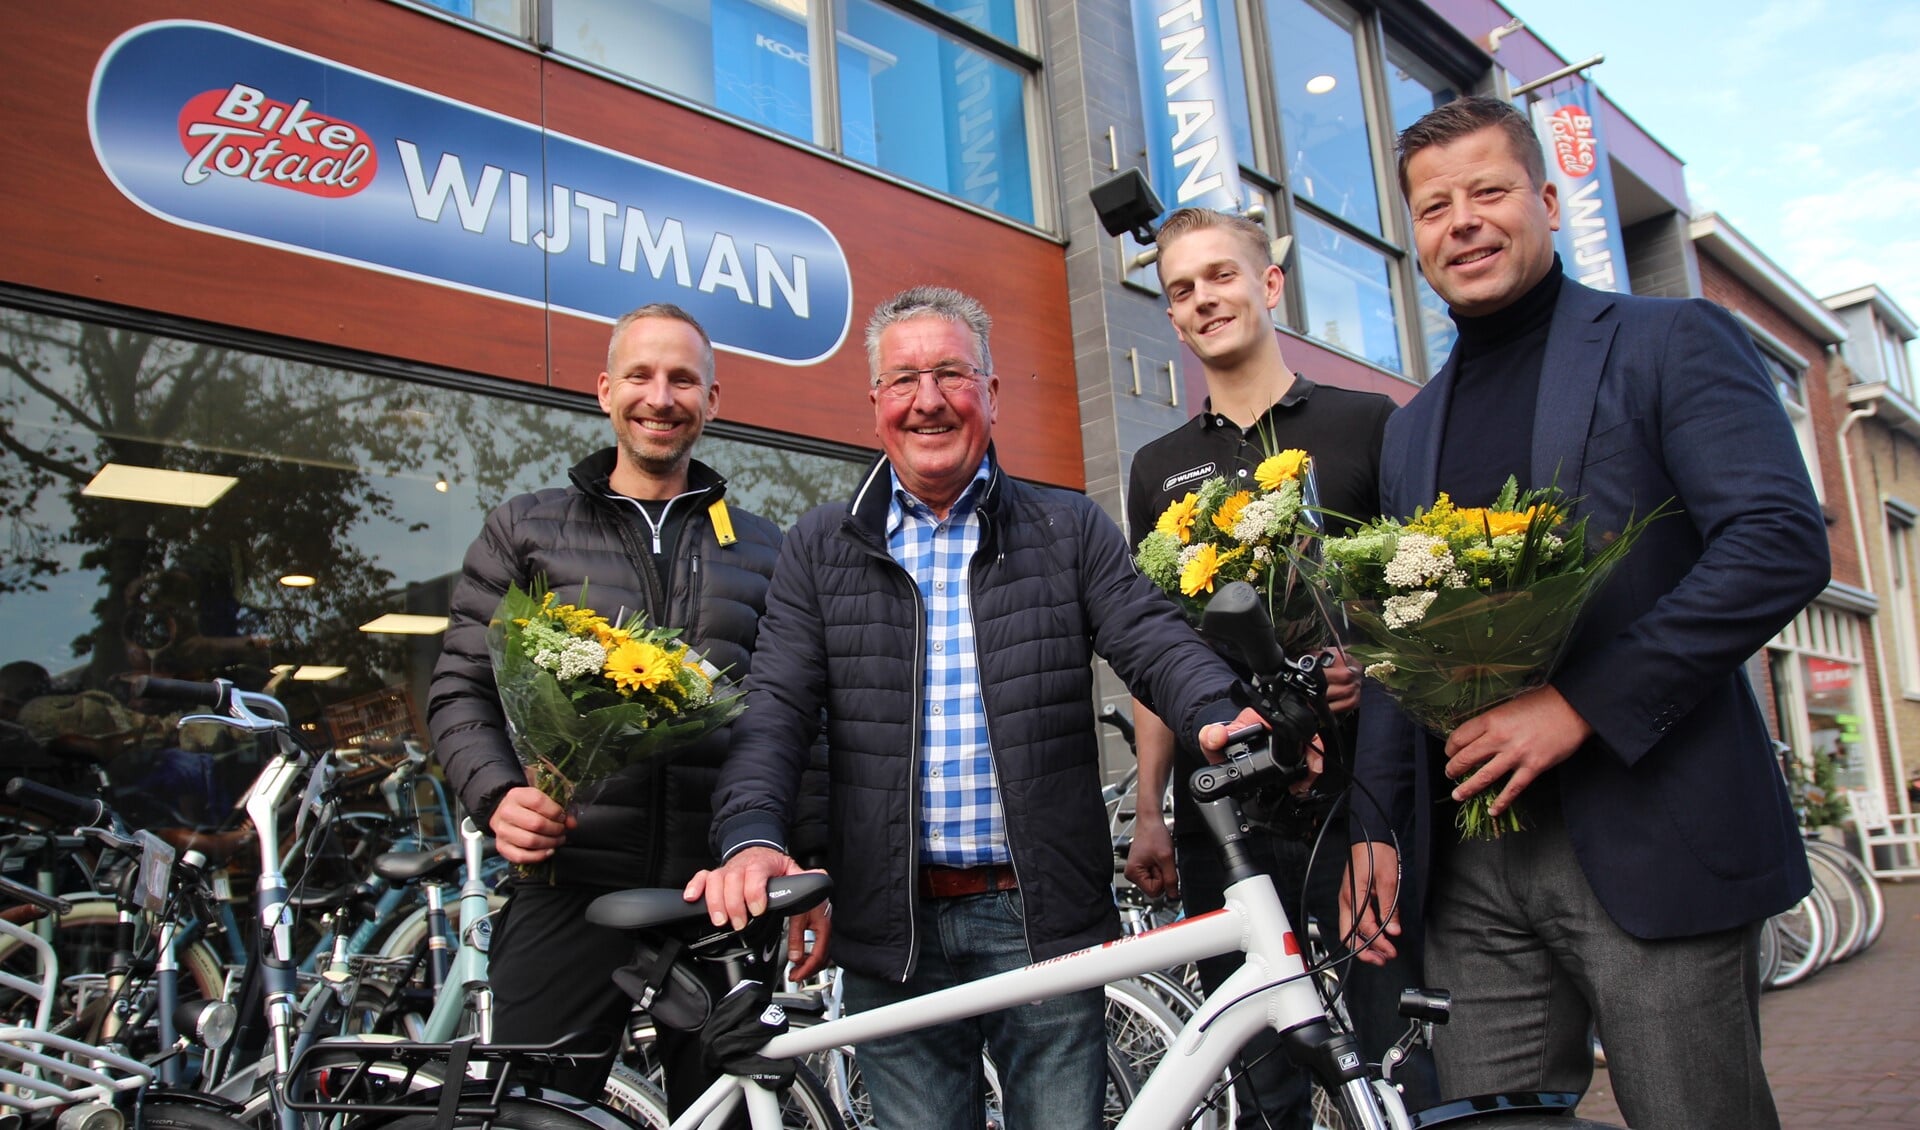 Pleun heeft weer een fiets. Verder op de foto Kevin van Wijtman Tweewielers, actievoerder Jan-Willem Dijksman en zoon Jeroen van den Akker.